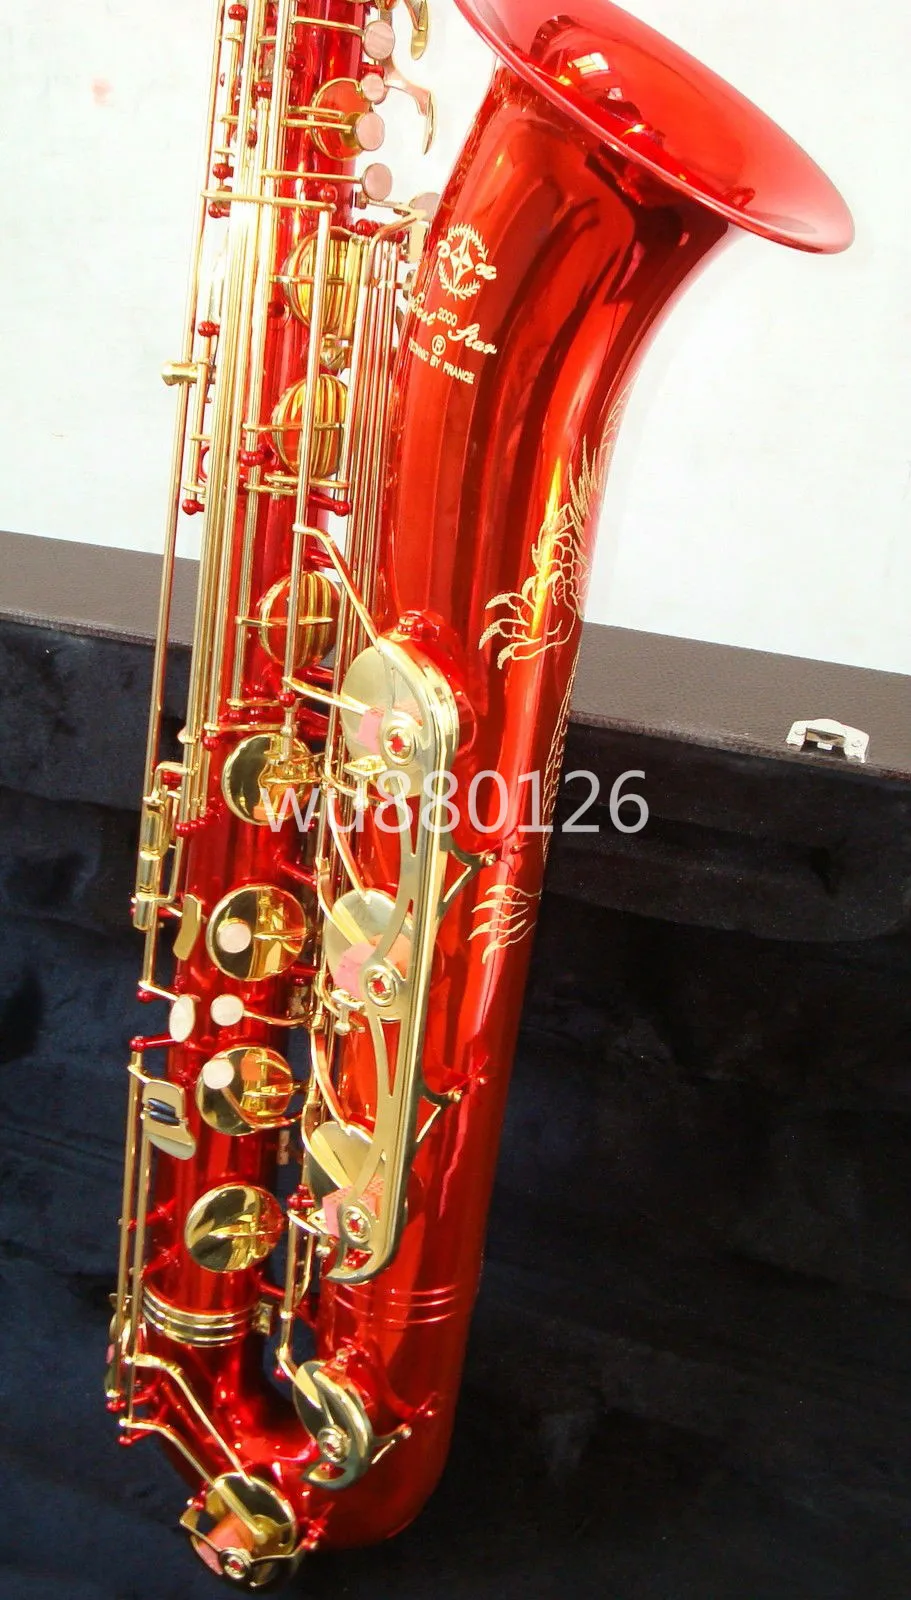 Nouveau saxophone de baryton surface rouge unique motif de dragon chinois magnifiquement sculpté avec une touche F faible, une touche F peut personnaliser le logo6431549